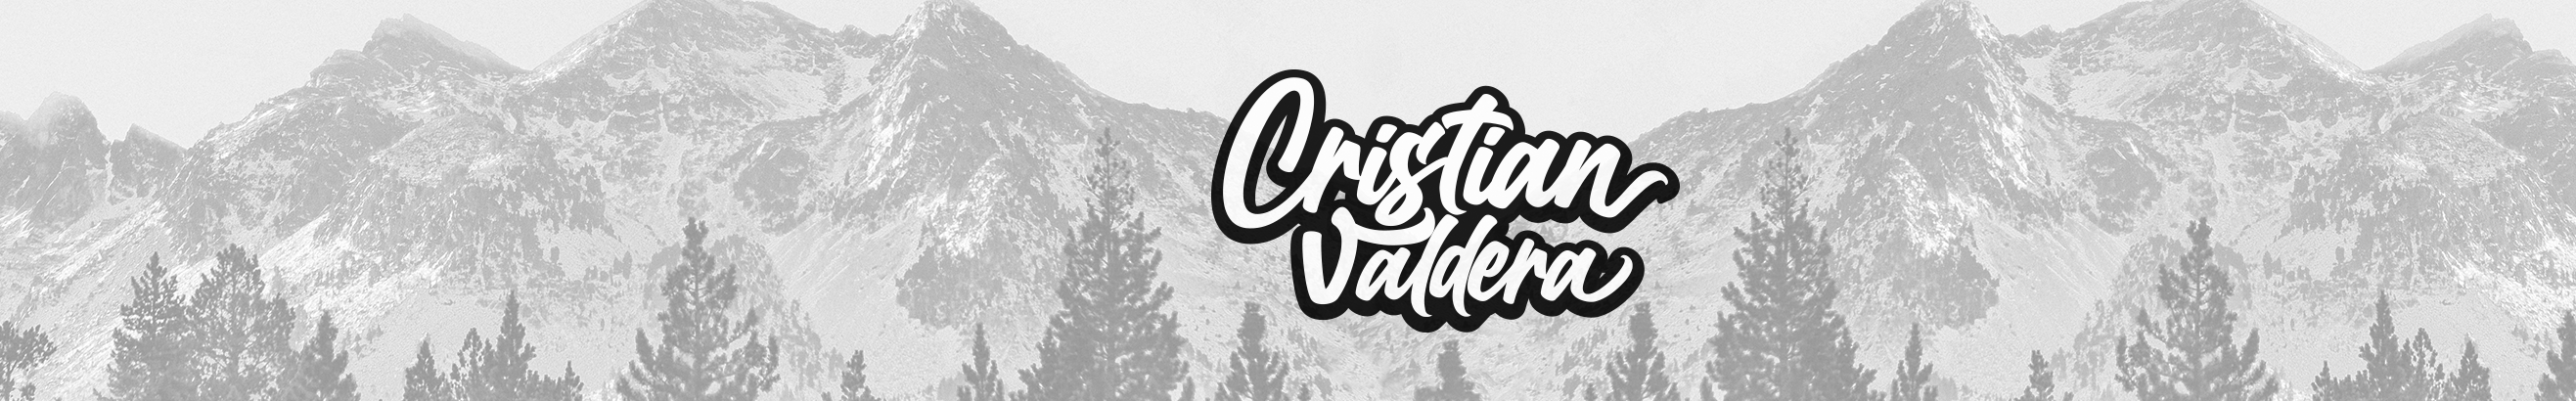 Cristian Valdera's profile banner